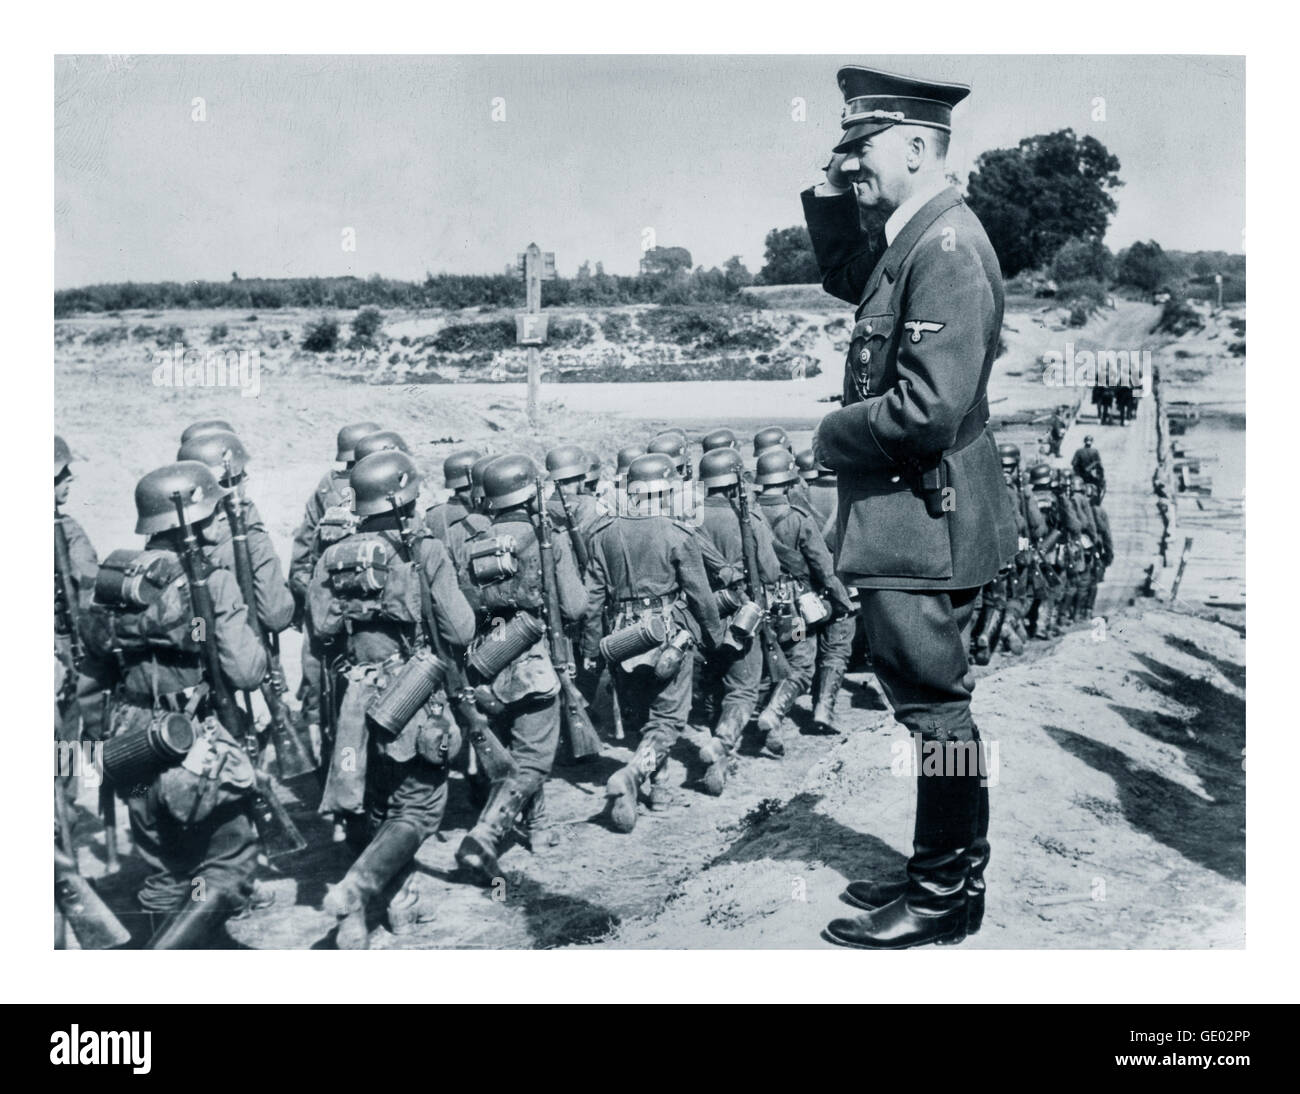 1939 INVASIONE NAZISTA TEDESCA POLONIA Adolf Hitler saluta le truppe di Wehrmacht durante l'occupazione della Polonia WW2 Foto Stock